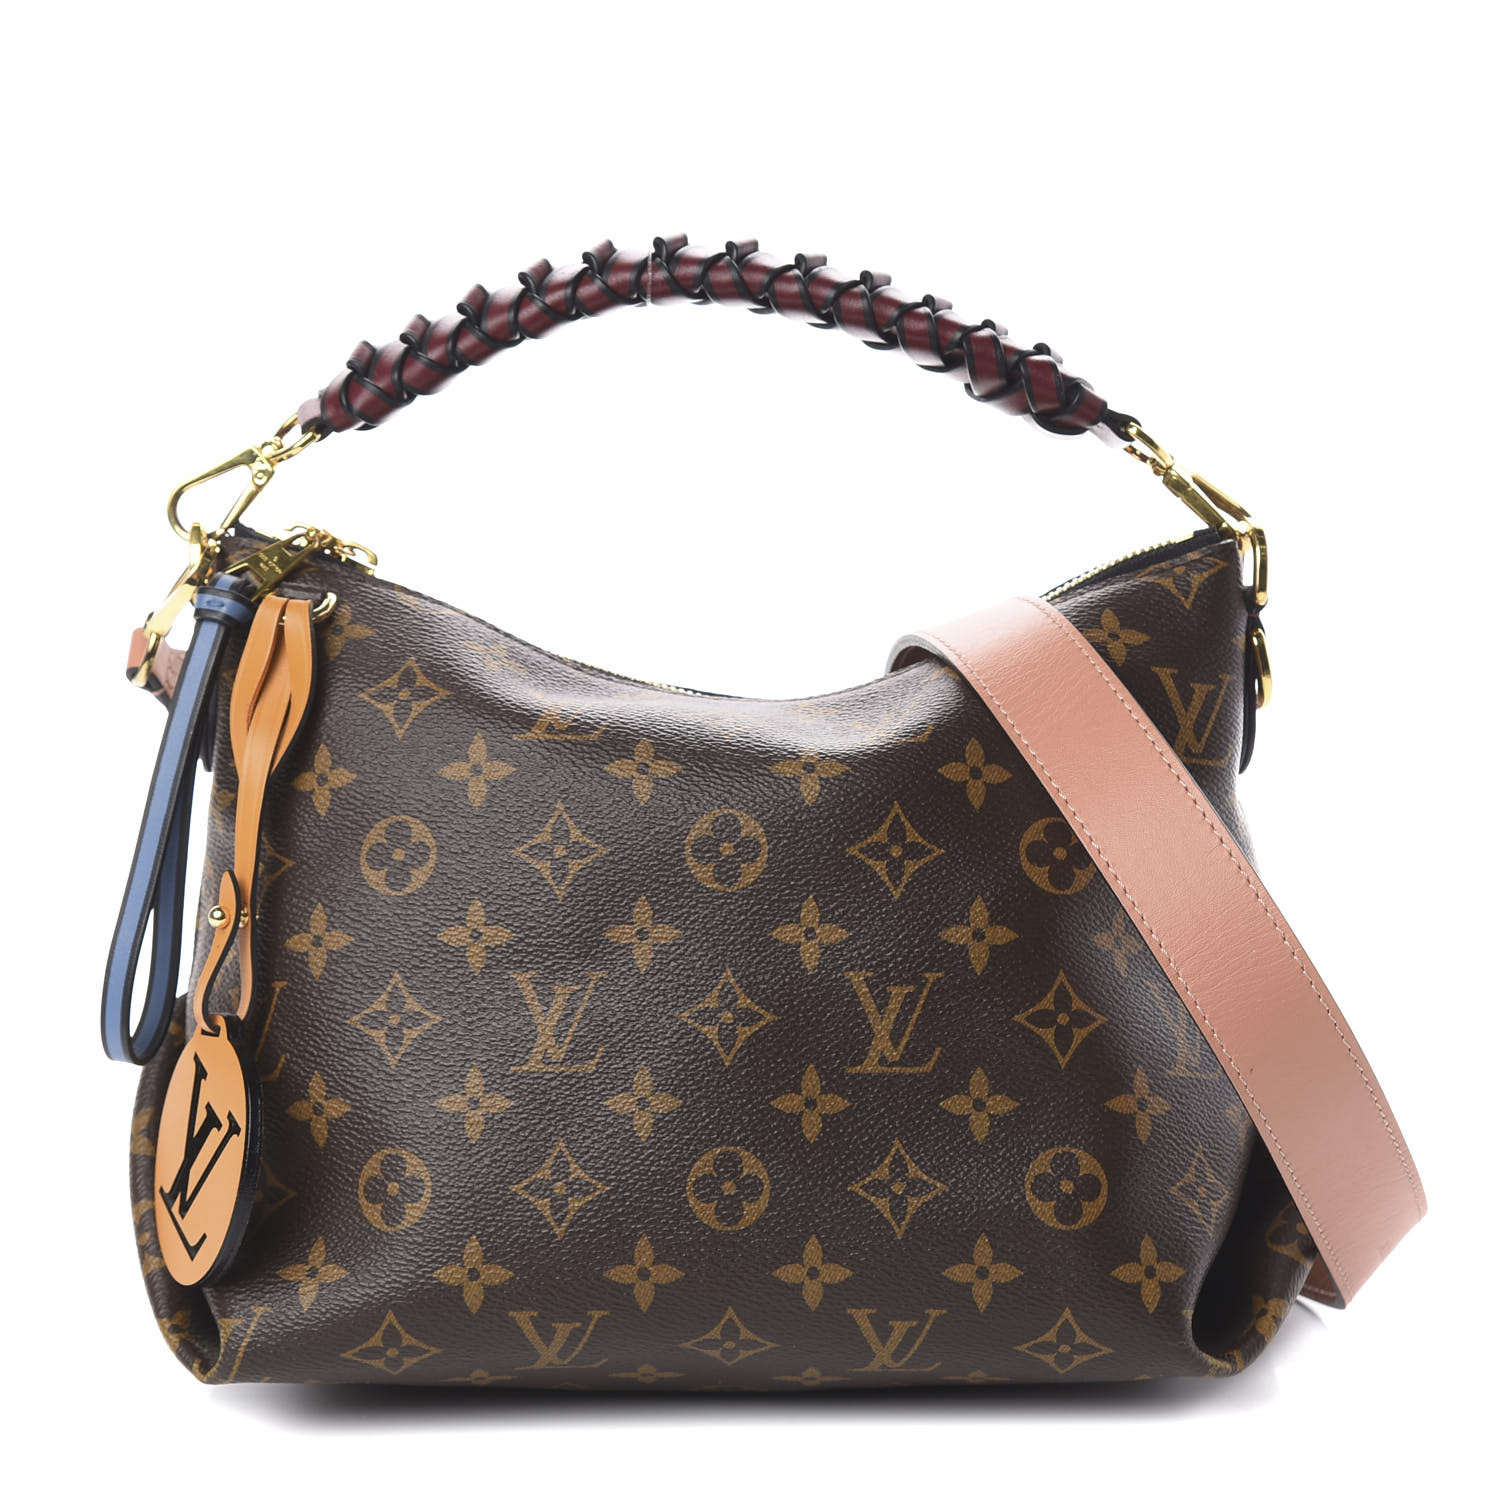 Louis Vuitton 2020 Discovery Pochette GM shoulder bag - ShopStyle